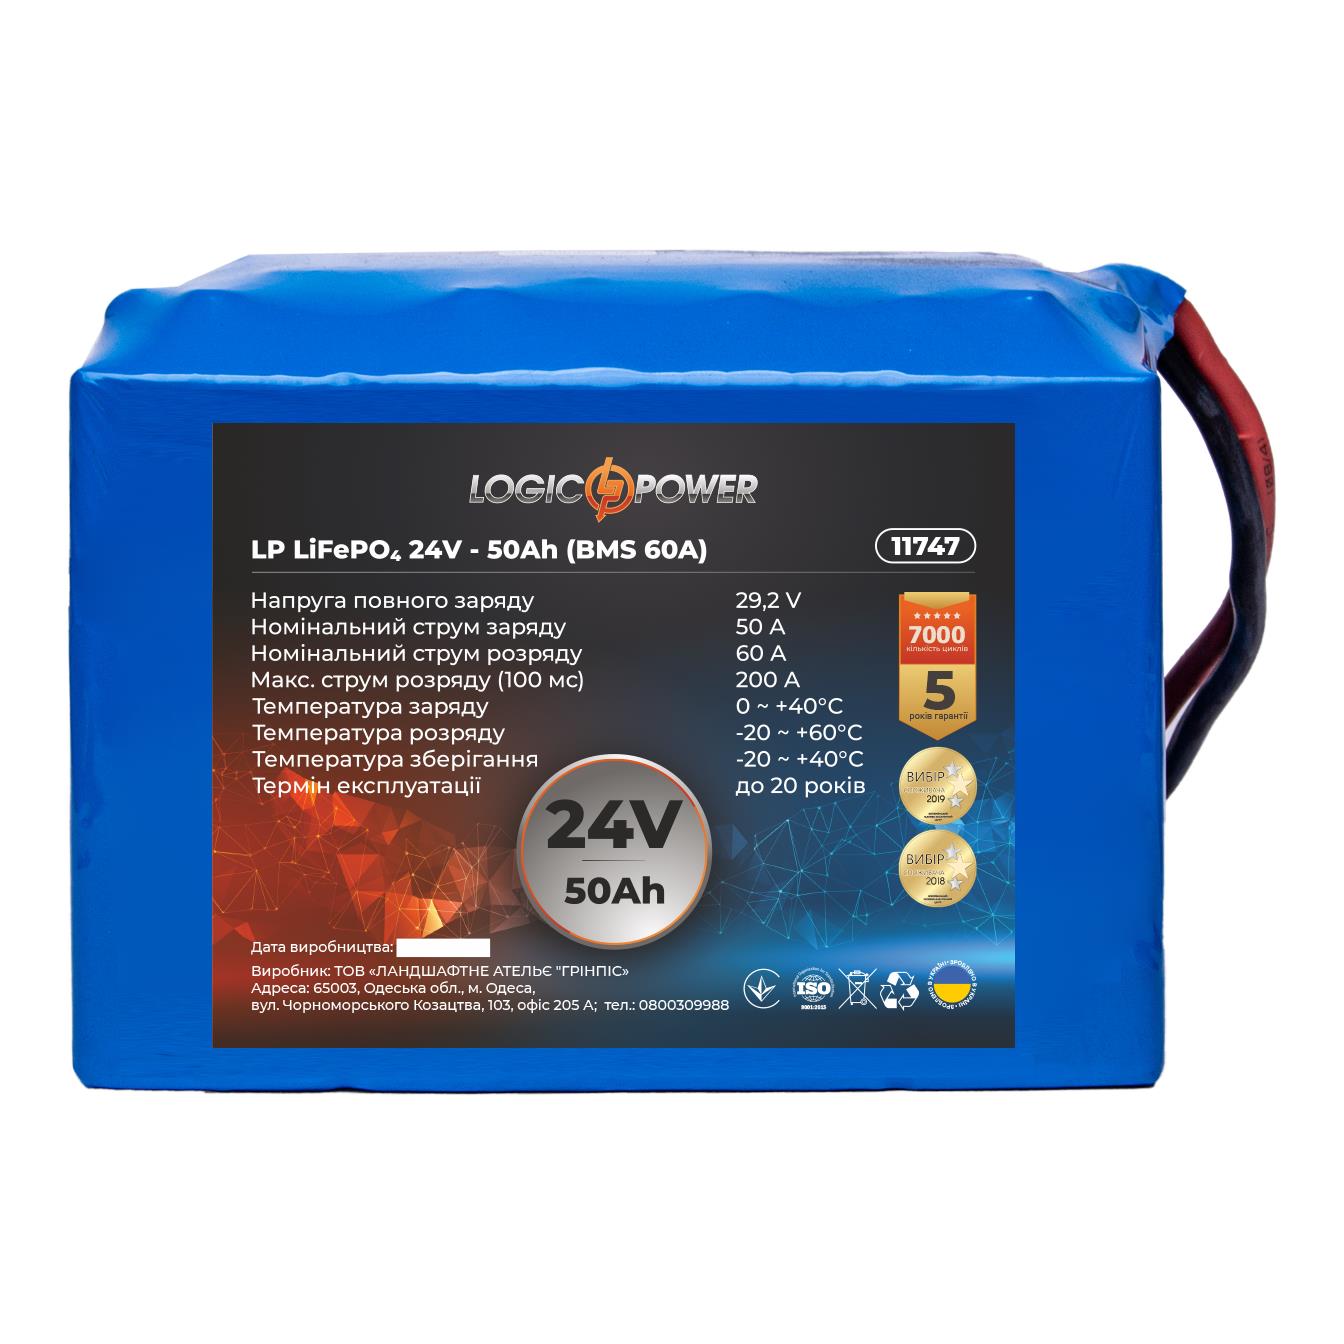 Акумулятор літій-залізо-фосфатний LogicPower LP LiFePO4 24V - 50 Ah (BMS 60A) (11747) в інтернет-магазині, головне фото